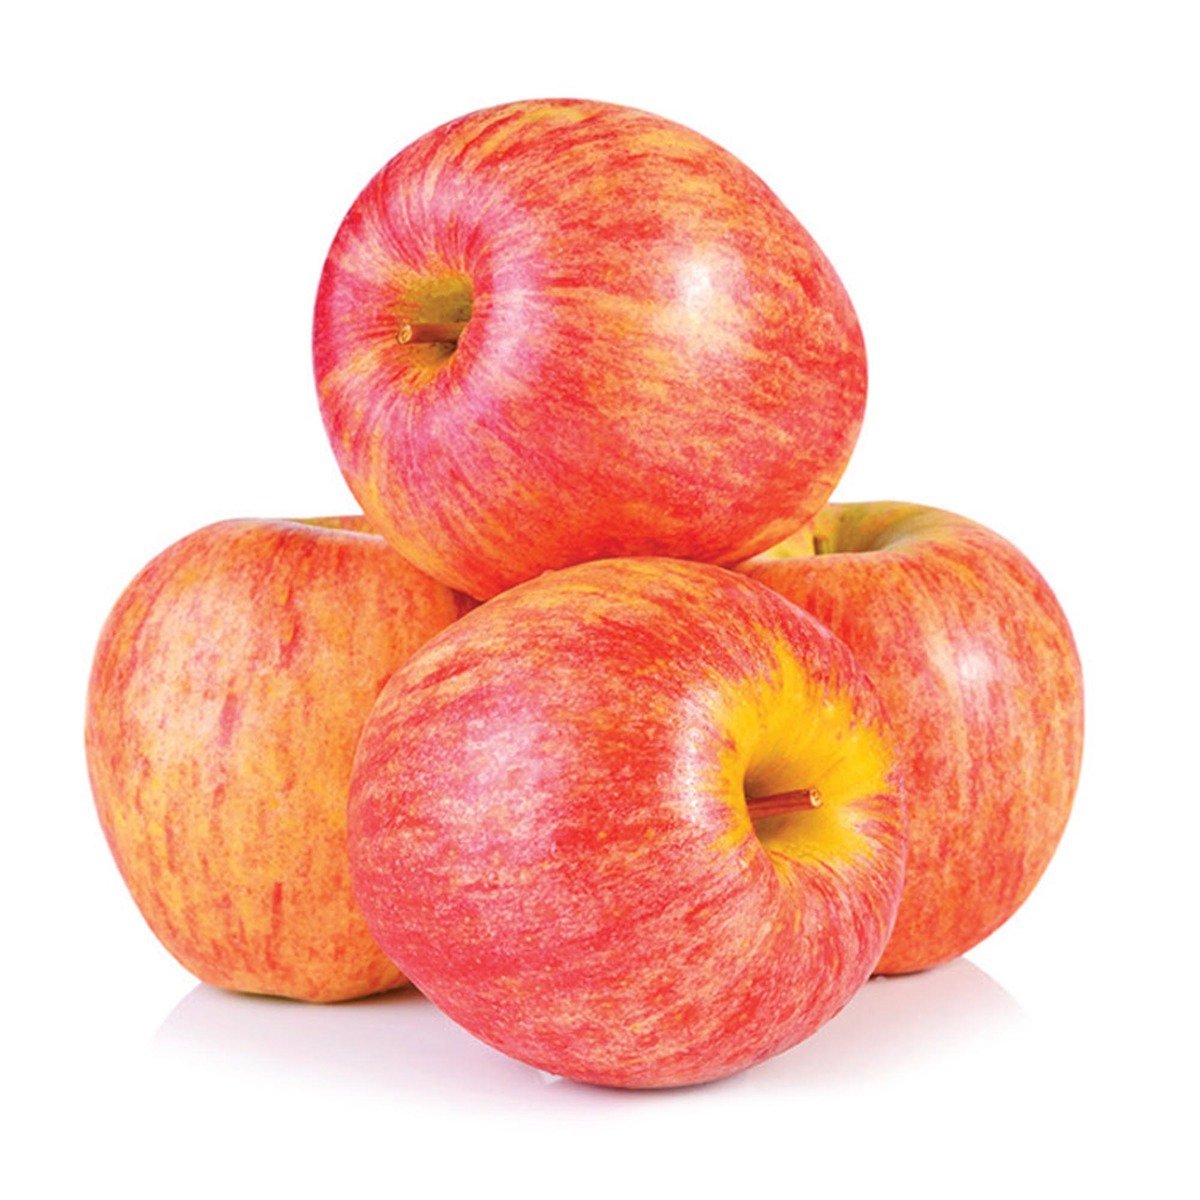 تفاح رويال جالا صغير 2 كجم وزن تقريبي